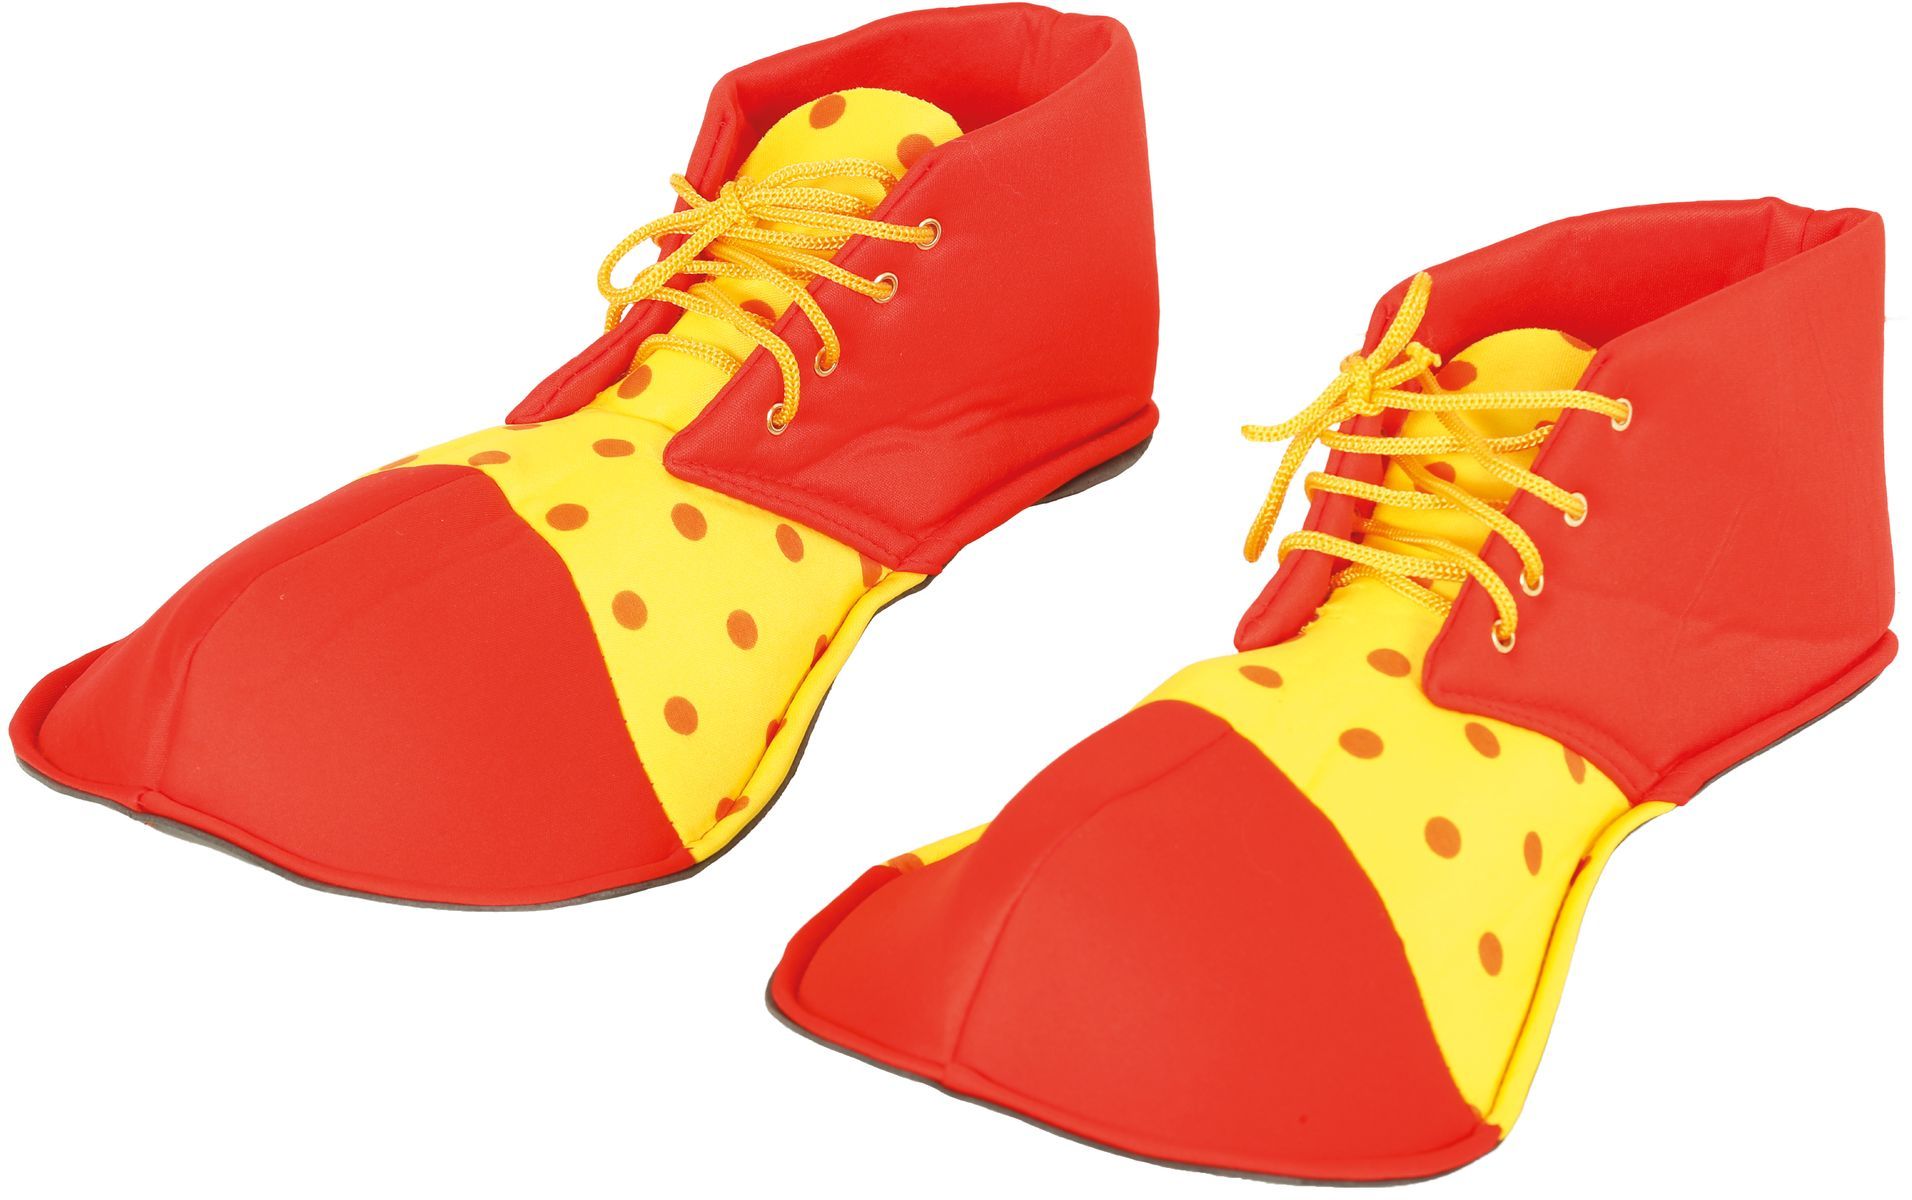 XXL clown schoenen rood